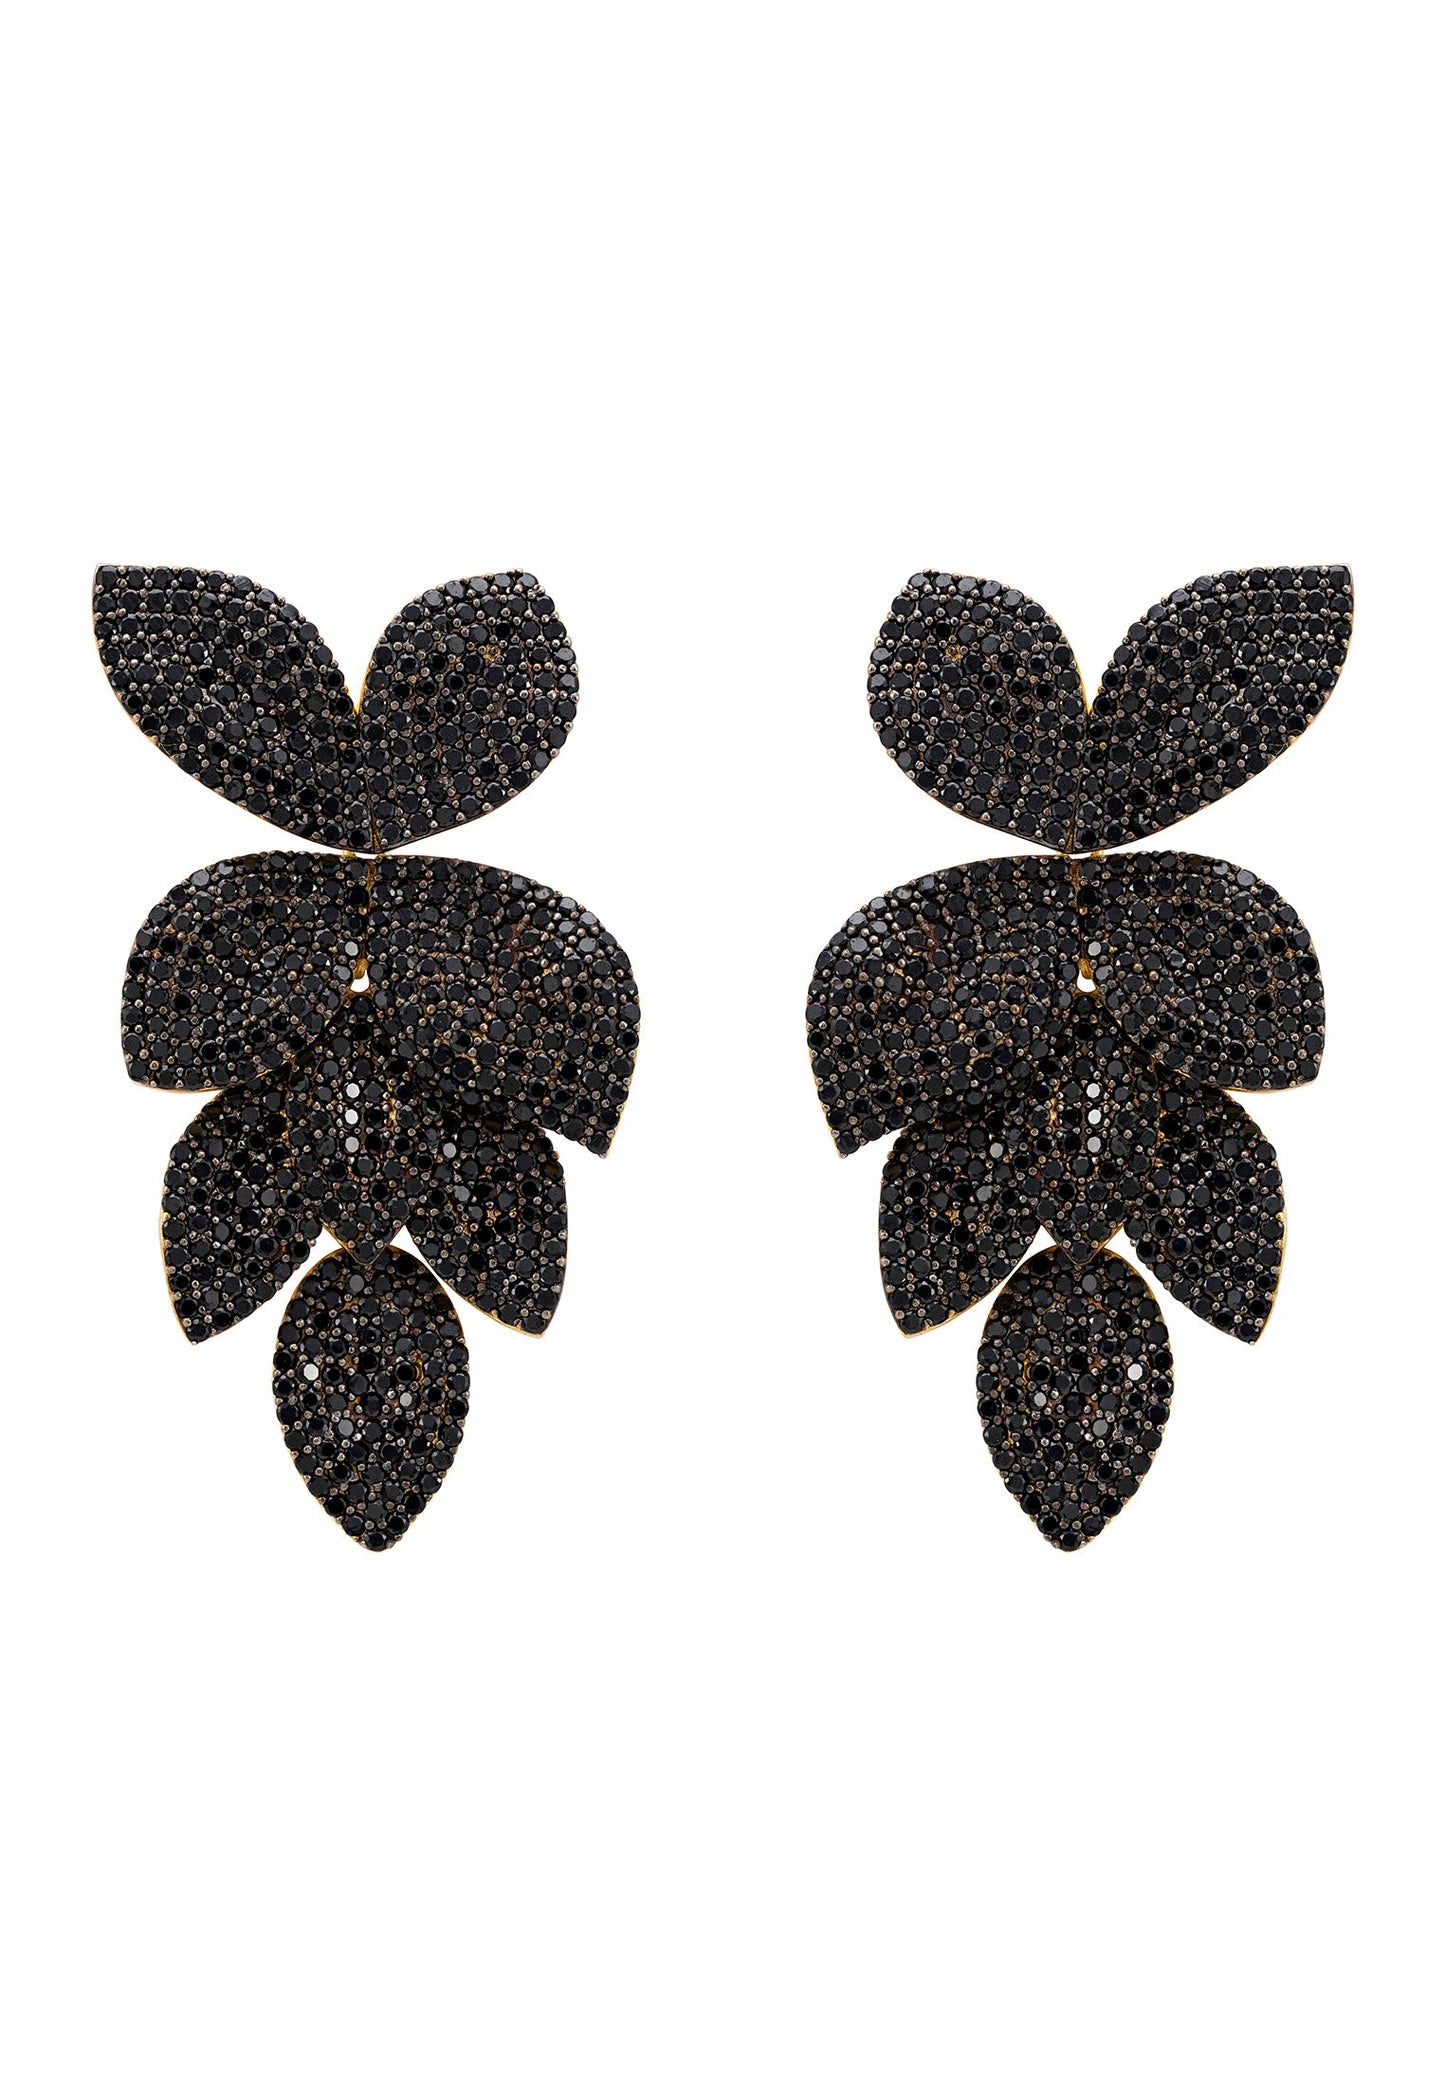 Petal Cascading Flower Earrings Gold Black Cz - lolaluxeshop